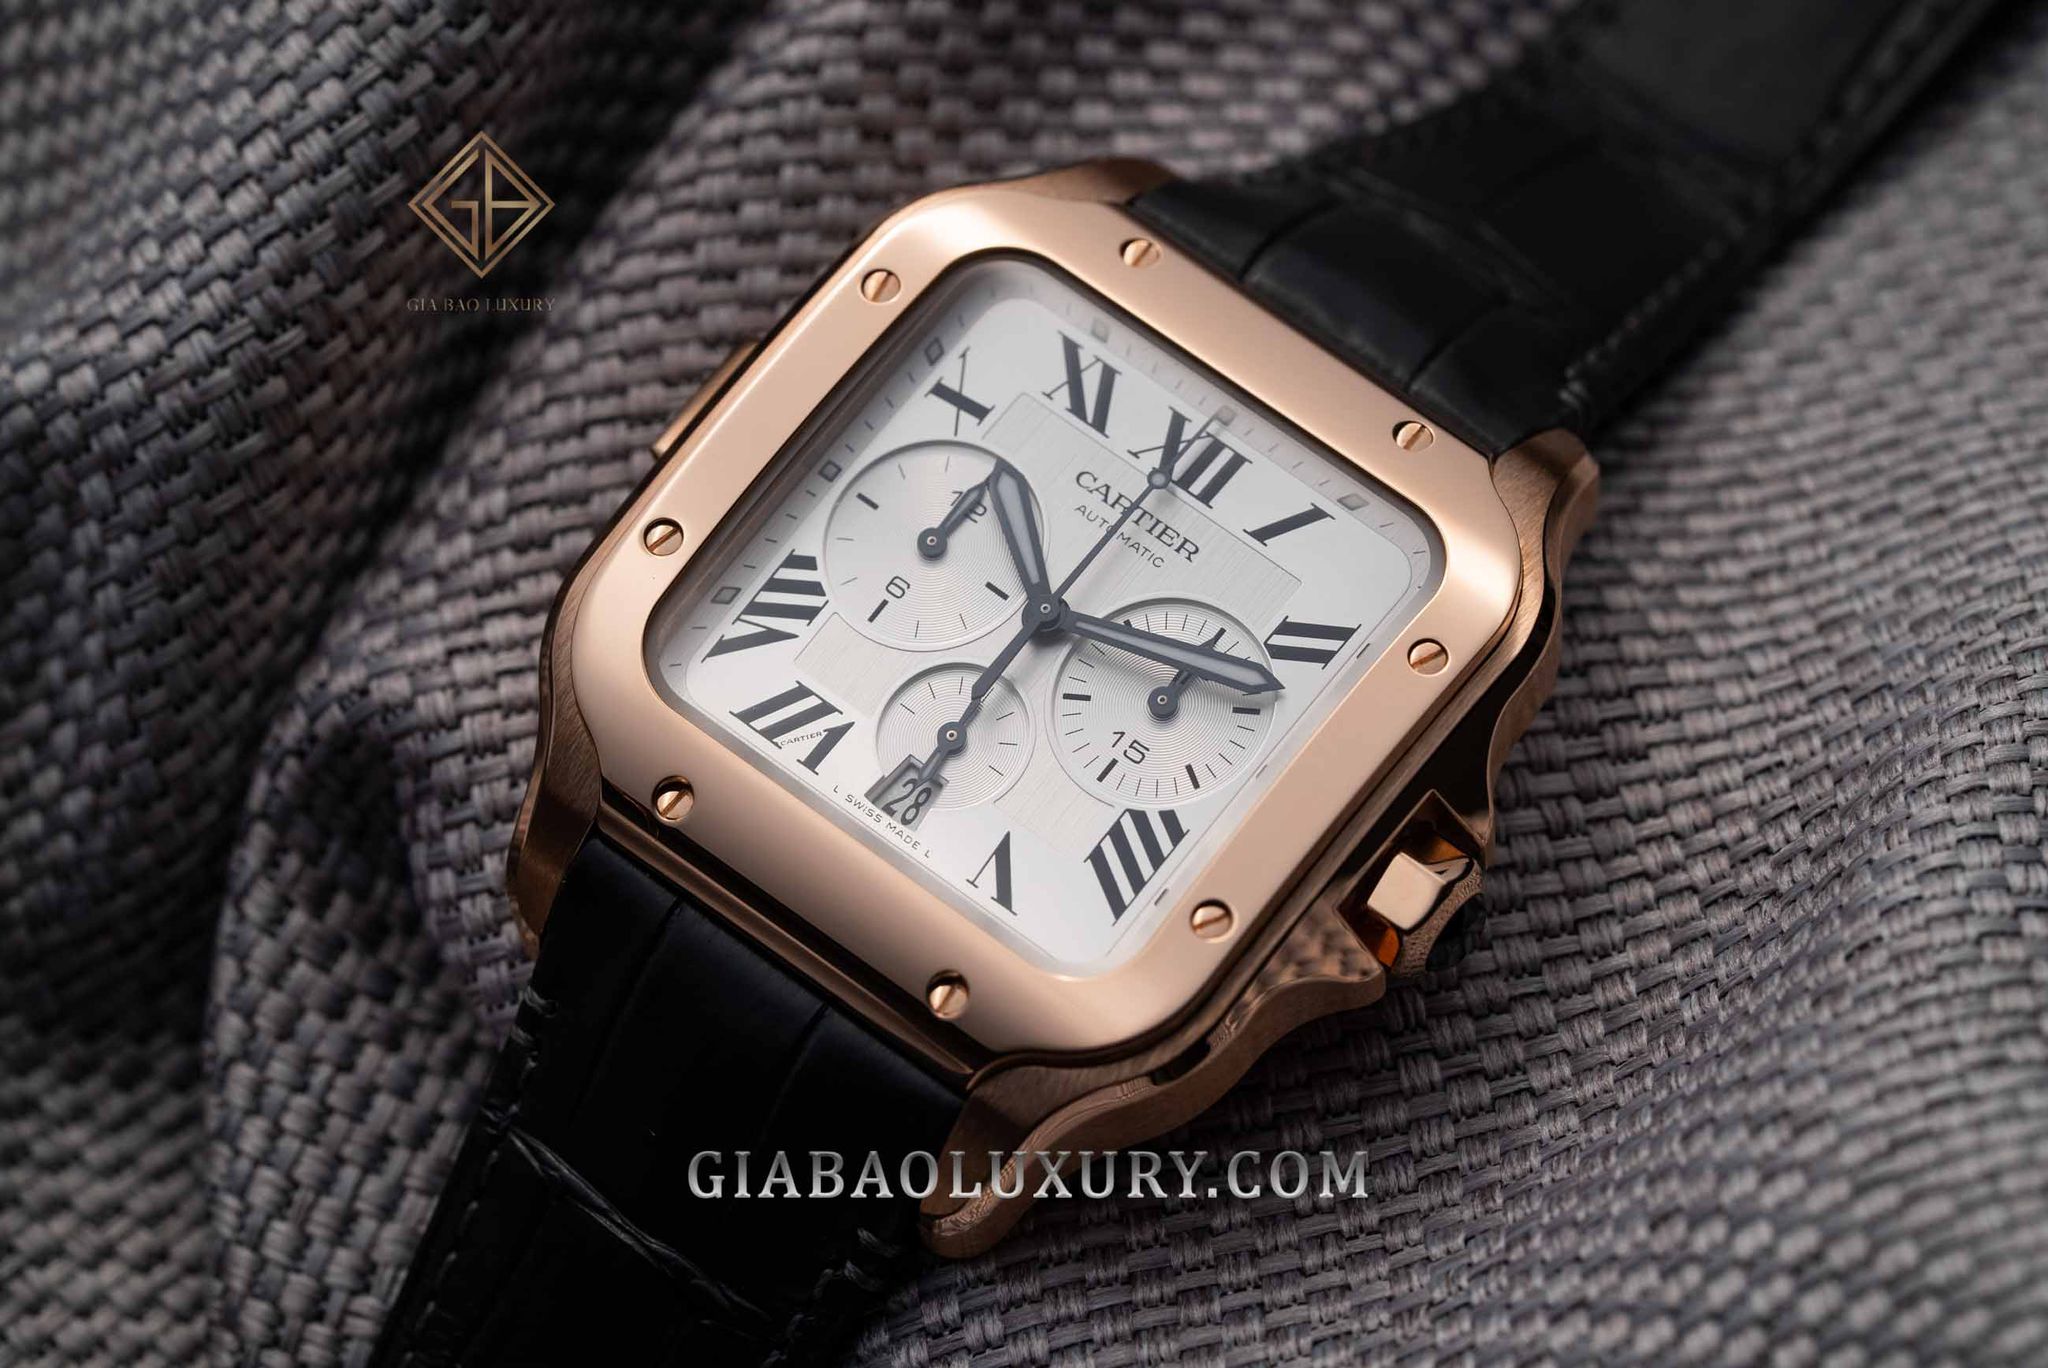 Ra mắt công chúng lần đầu tiên vào năm 1904, thiết kế đồng hồ Cartier Santos vốn là quà tặng của nhà sáng lập thương hiệu – Louis Cartier dành cho người bạn của mình – một phi công tên Alberto Santos